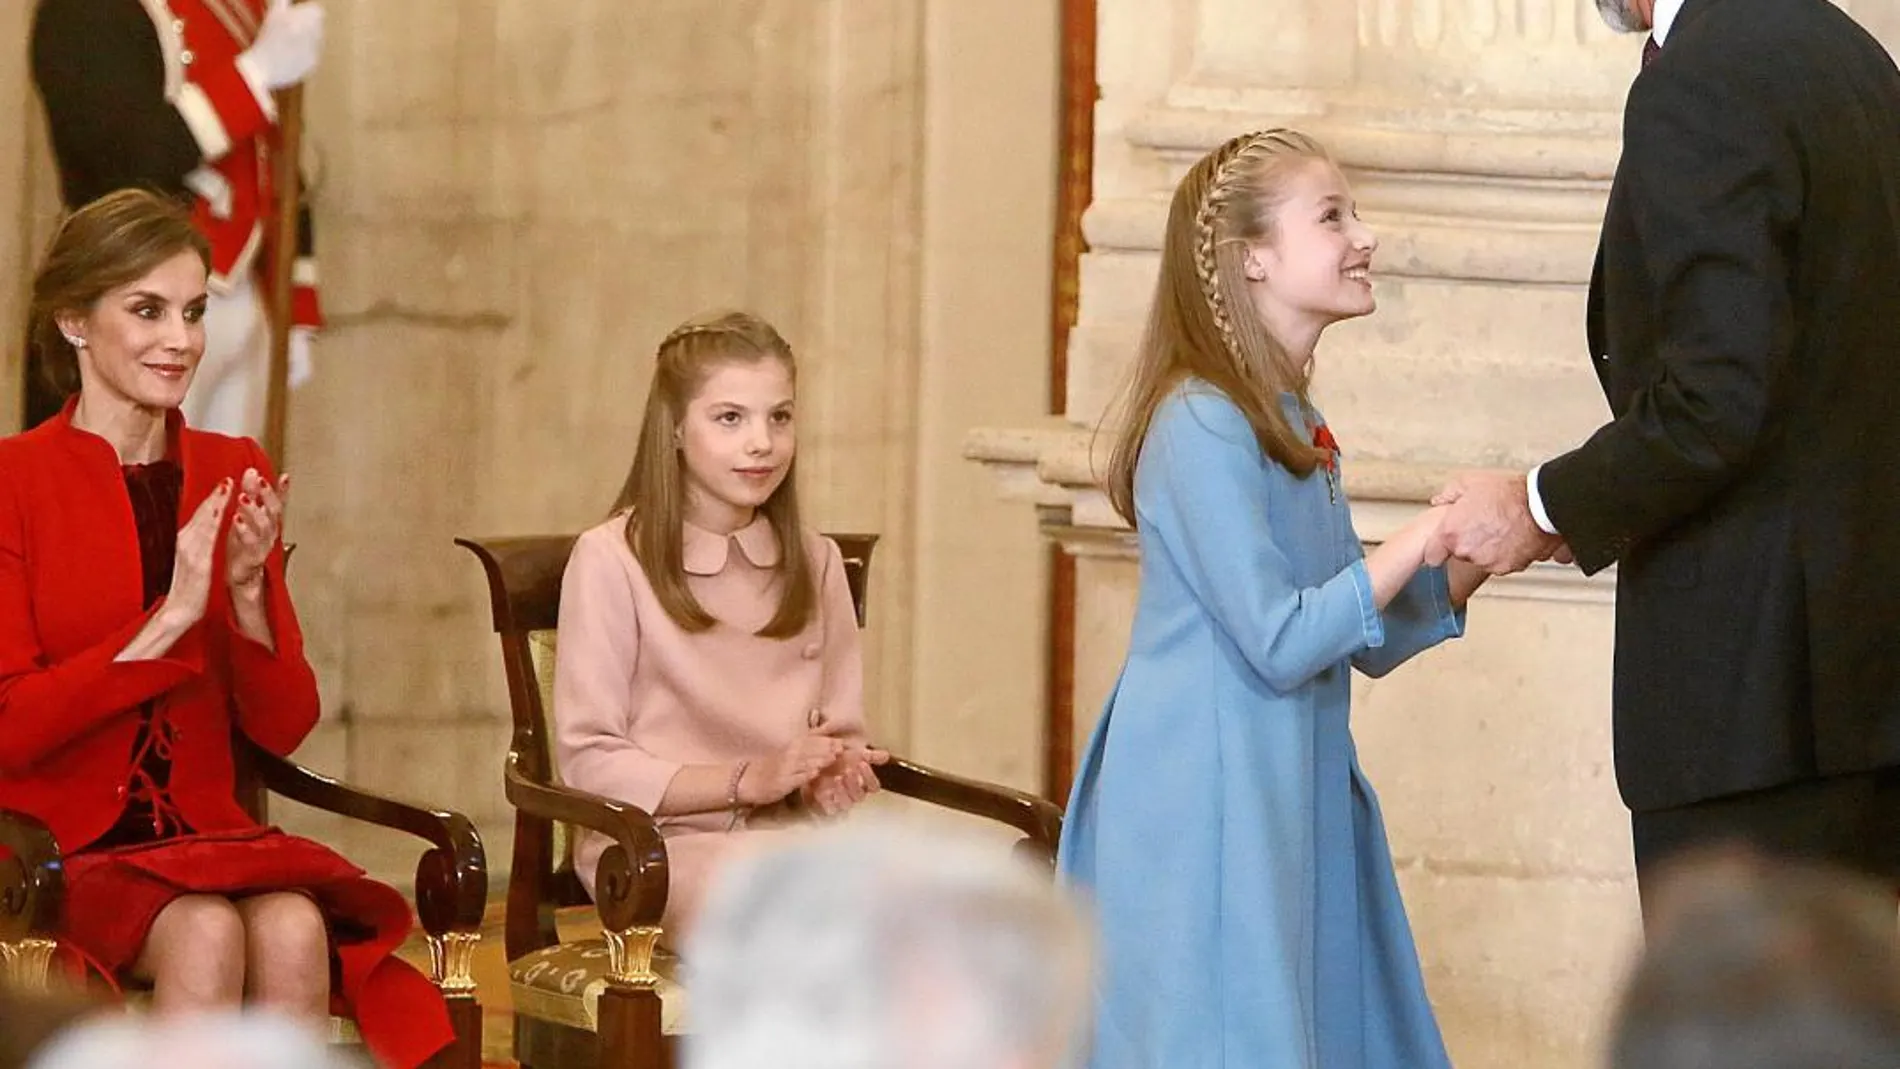 La reina emérita Sofía, junto al rey emérito Juan Carlos conversa con la princesa Leonor después de que el Rey Felipe VI la haya impuesto hoy el Collar del Toisón de Oro